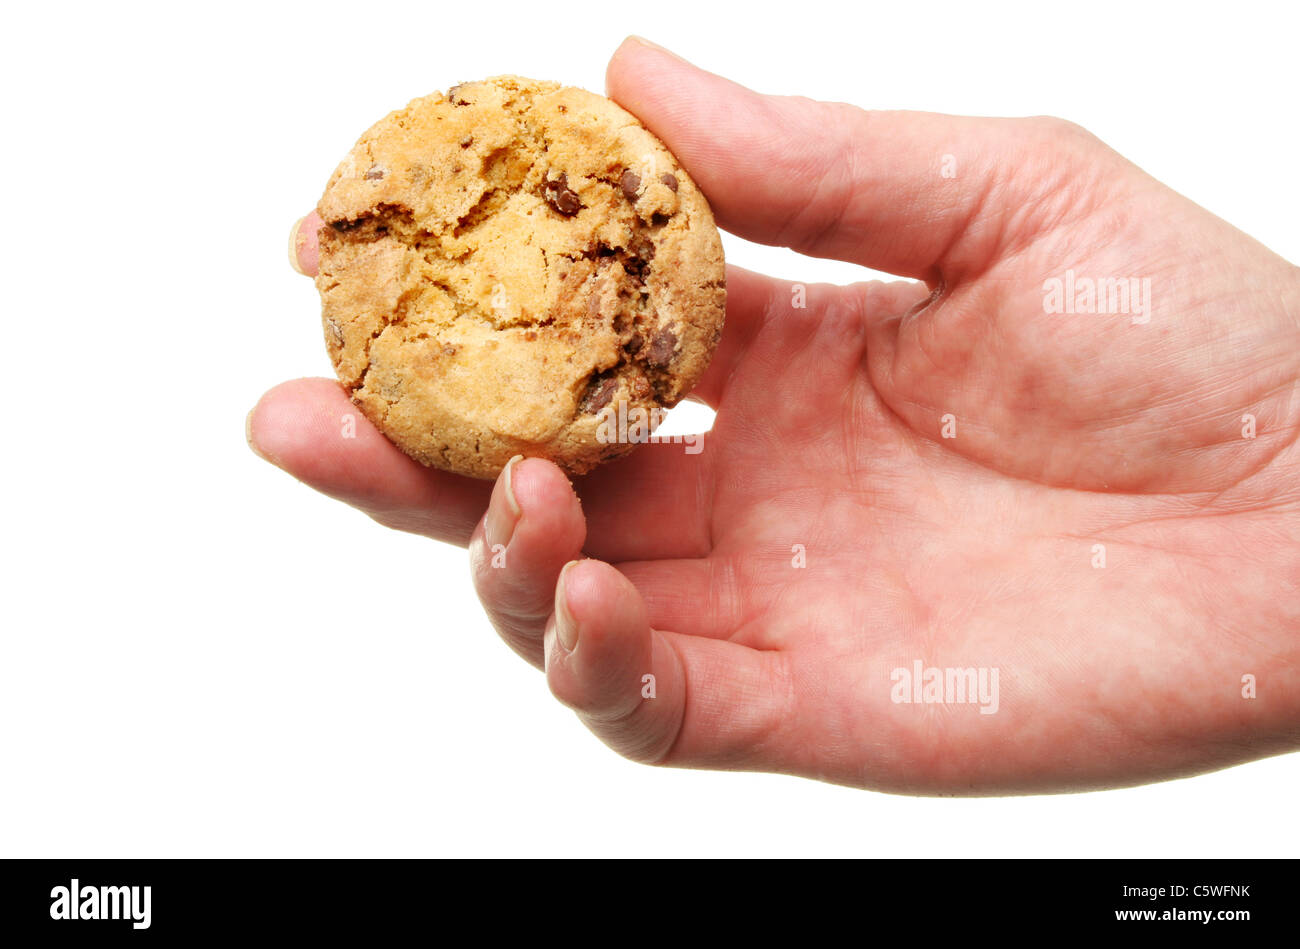 Primer plano de una mano sujetando una galleta de chocolate blanco contra aislado Foto de stock